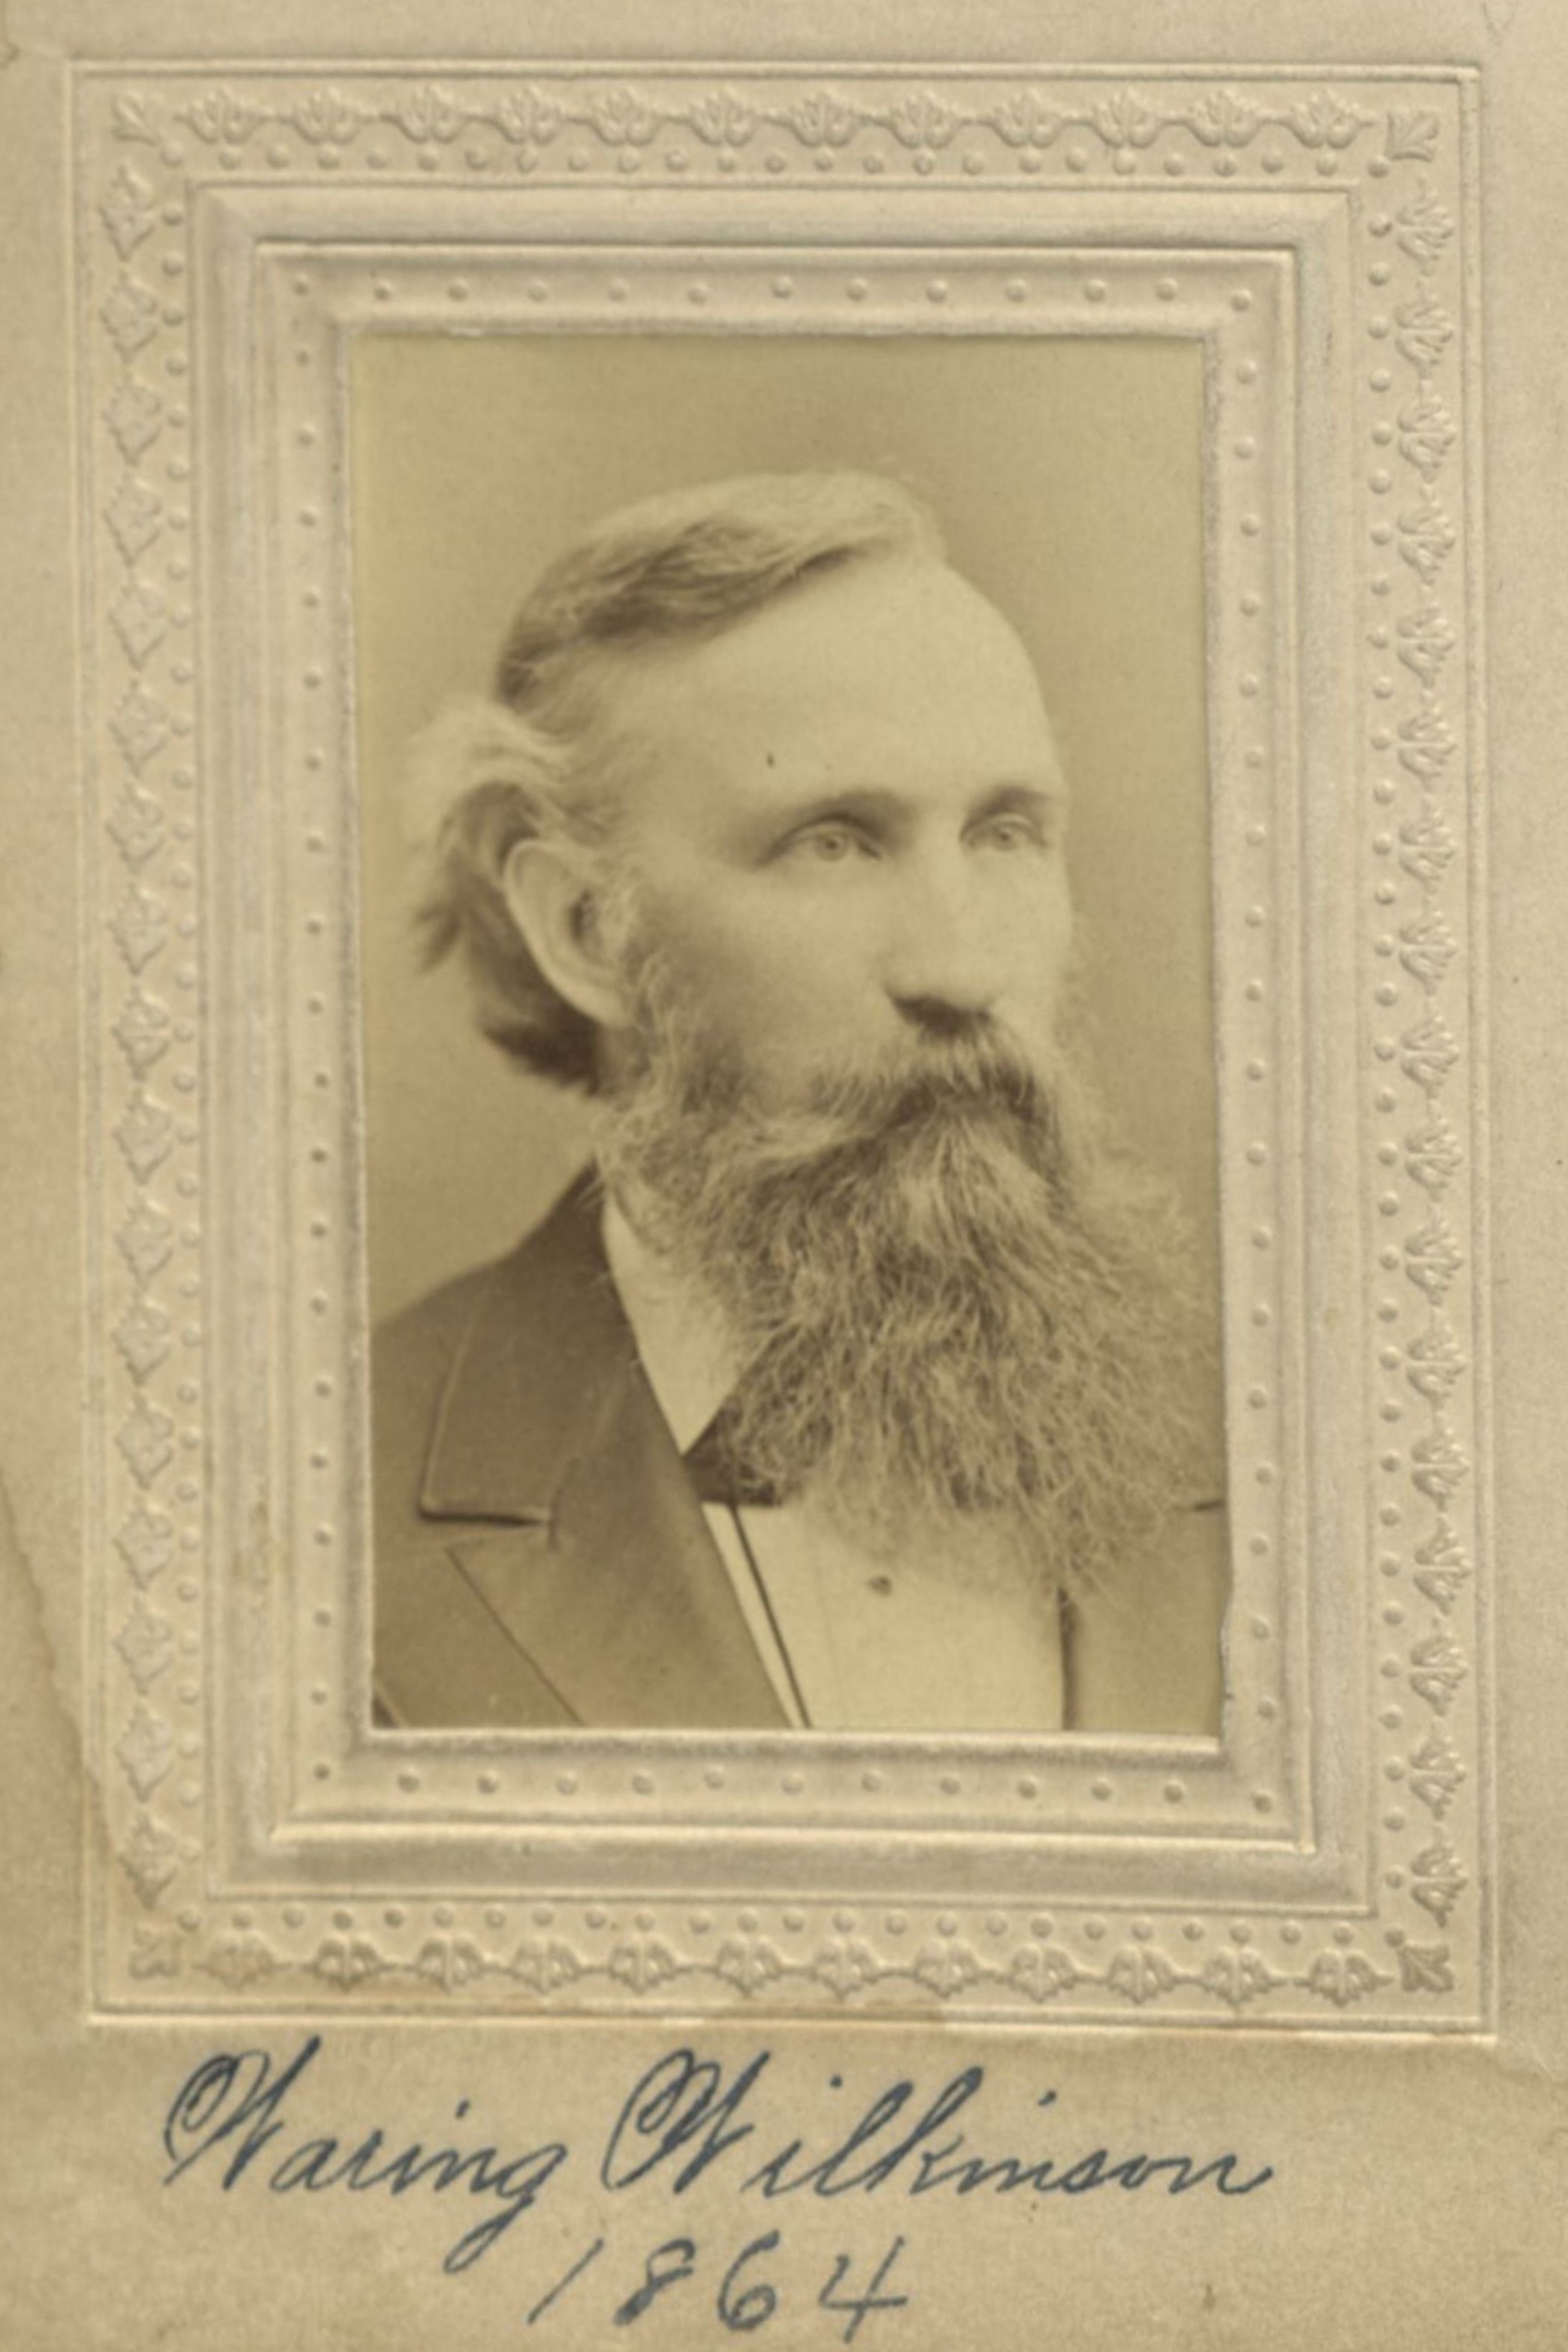 Member portrait of Warring Wilkinson